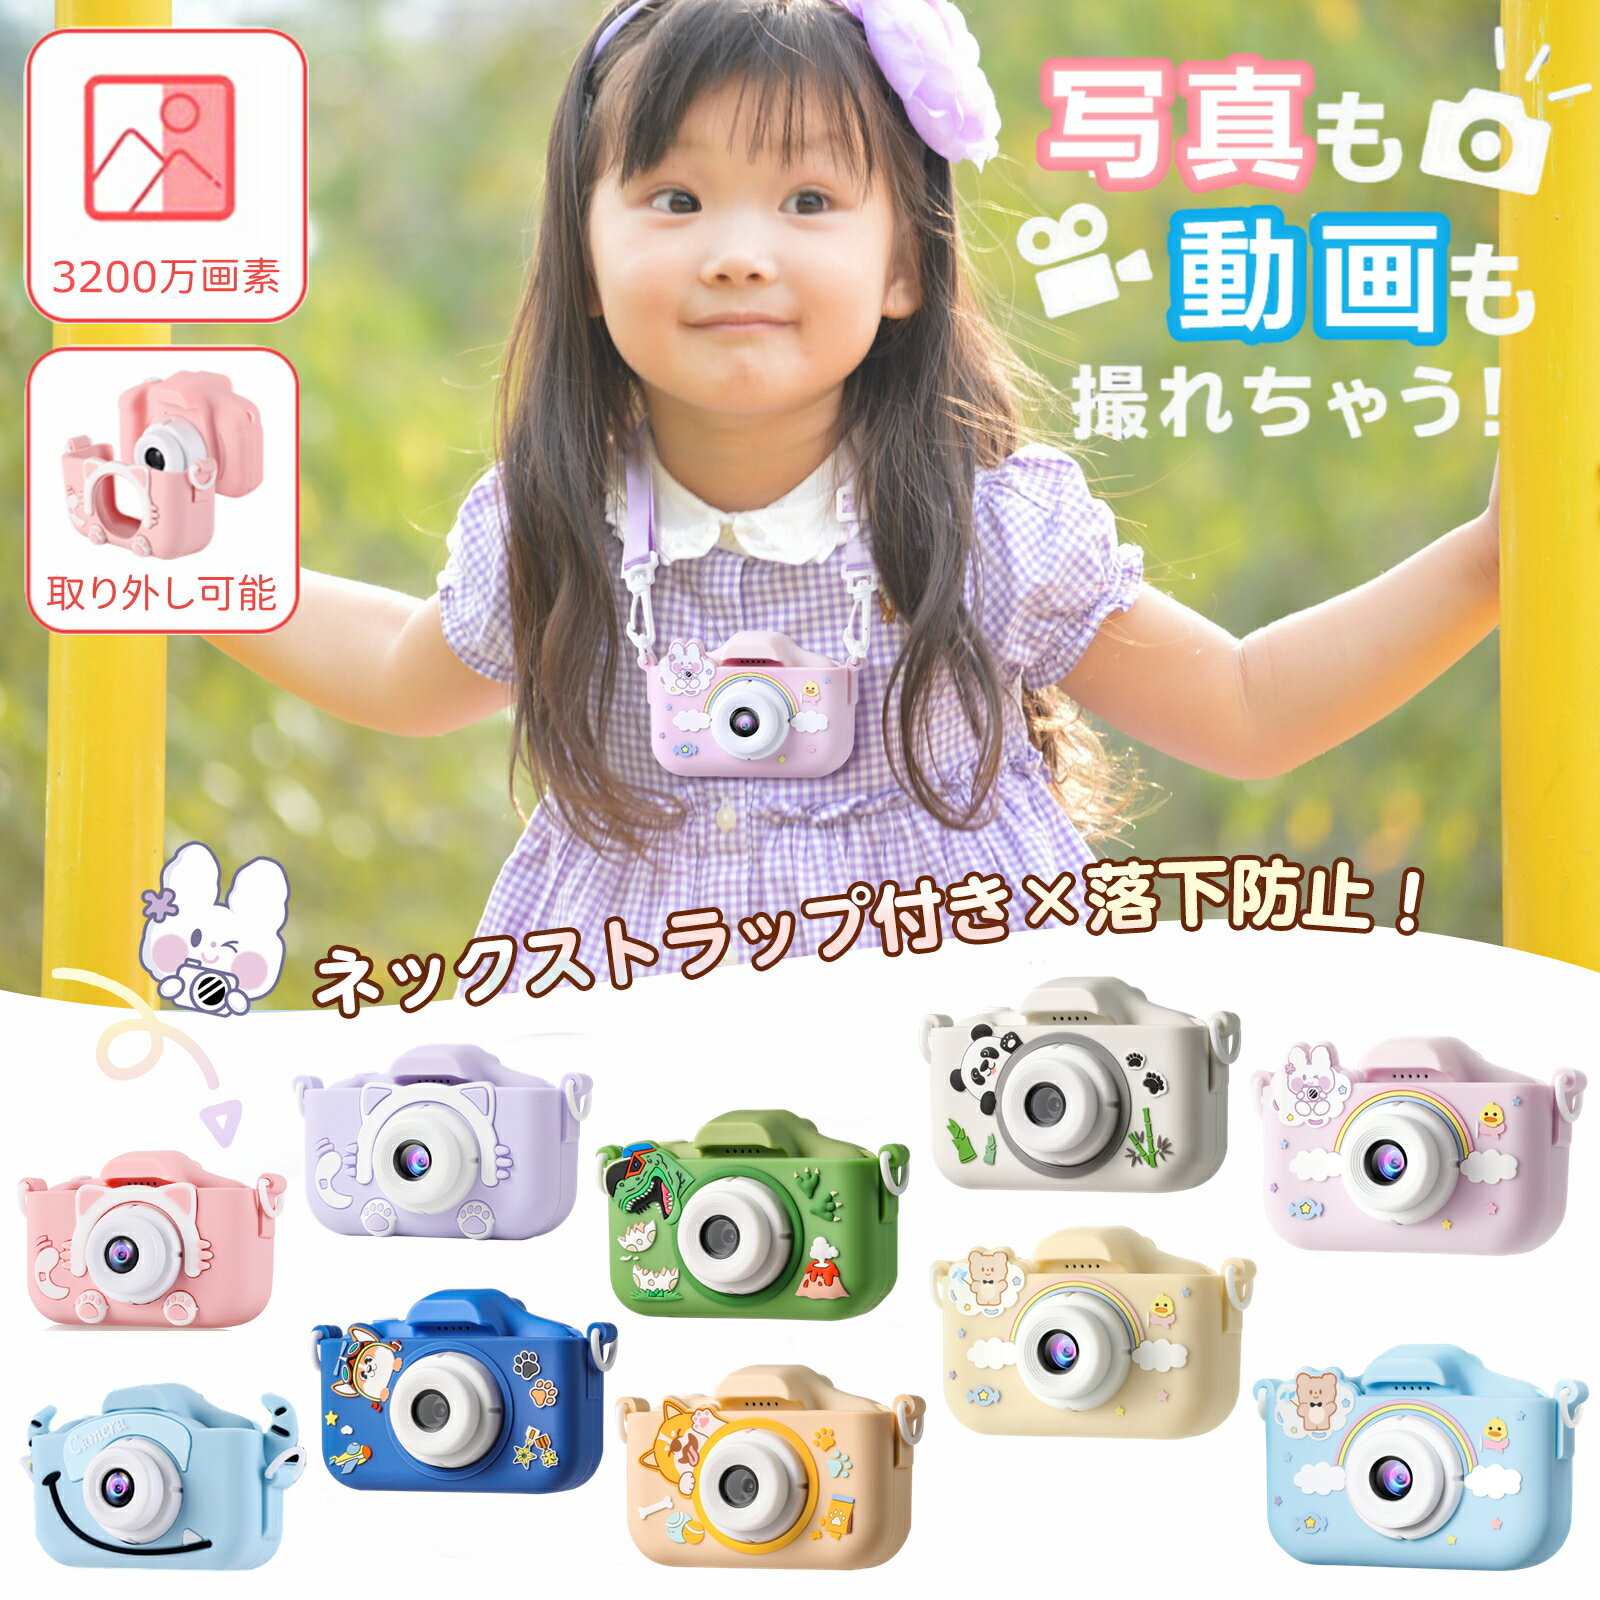 ＼日本正規品☆1年保証／ カメラ 子供用 デジタルカメラ 32GBカード キッズカメラ トイカメラ こどもカメラ 3歳 4歳 5歳 6歳 7歳 知育玩具 女の子 男の子 プレゼント 子供 誕生日プレゼント 人気 おもちゃ かわいい カバー付き